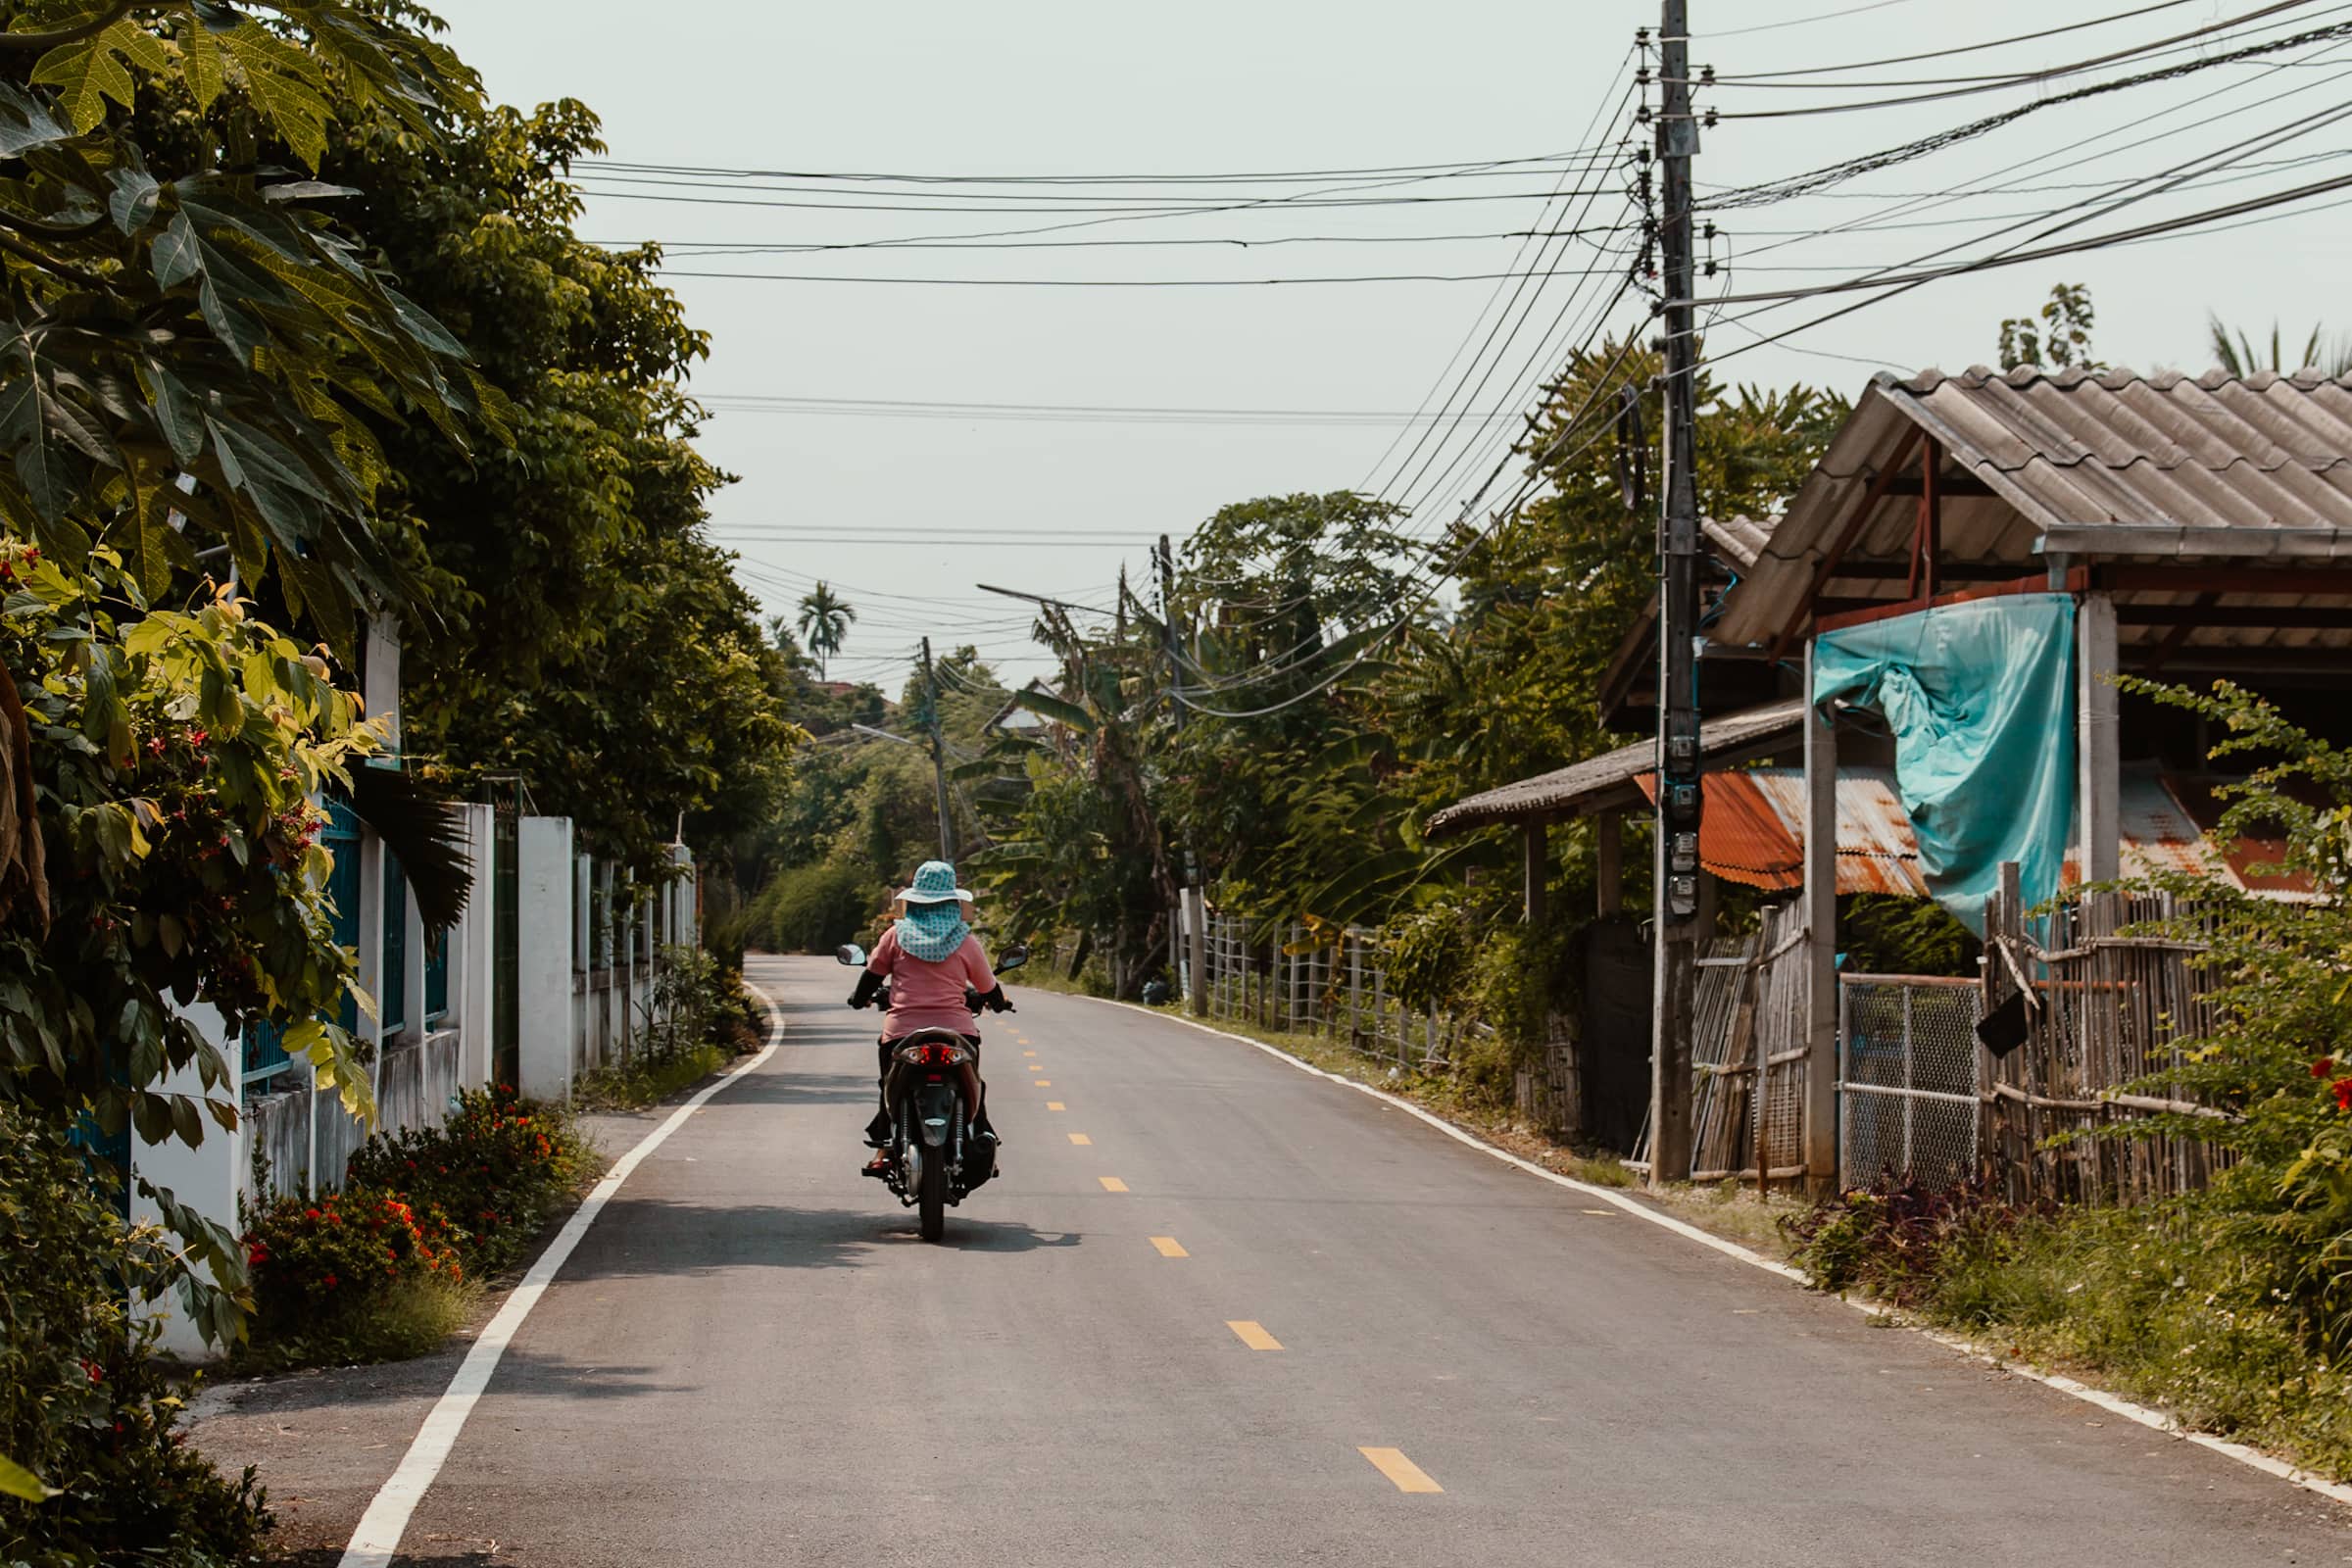 Estrada rural à volta de Chiang Mai, Tailândia, com um ciclista